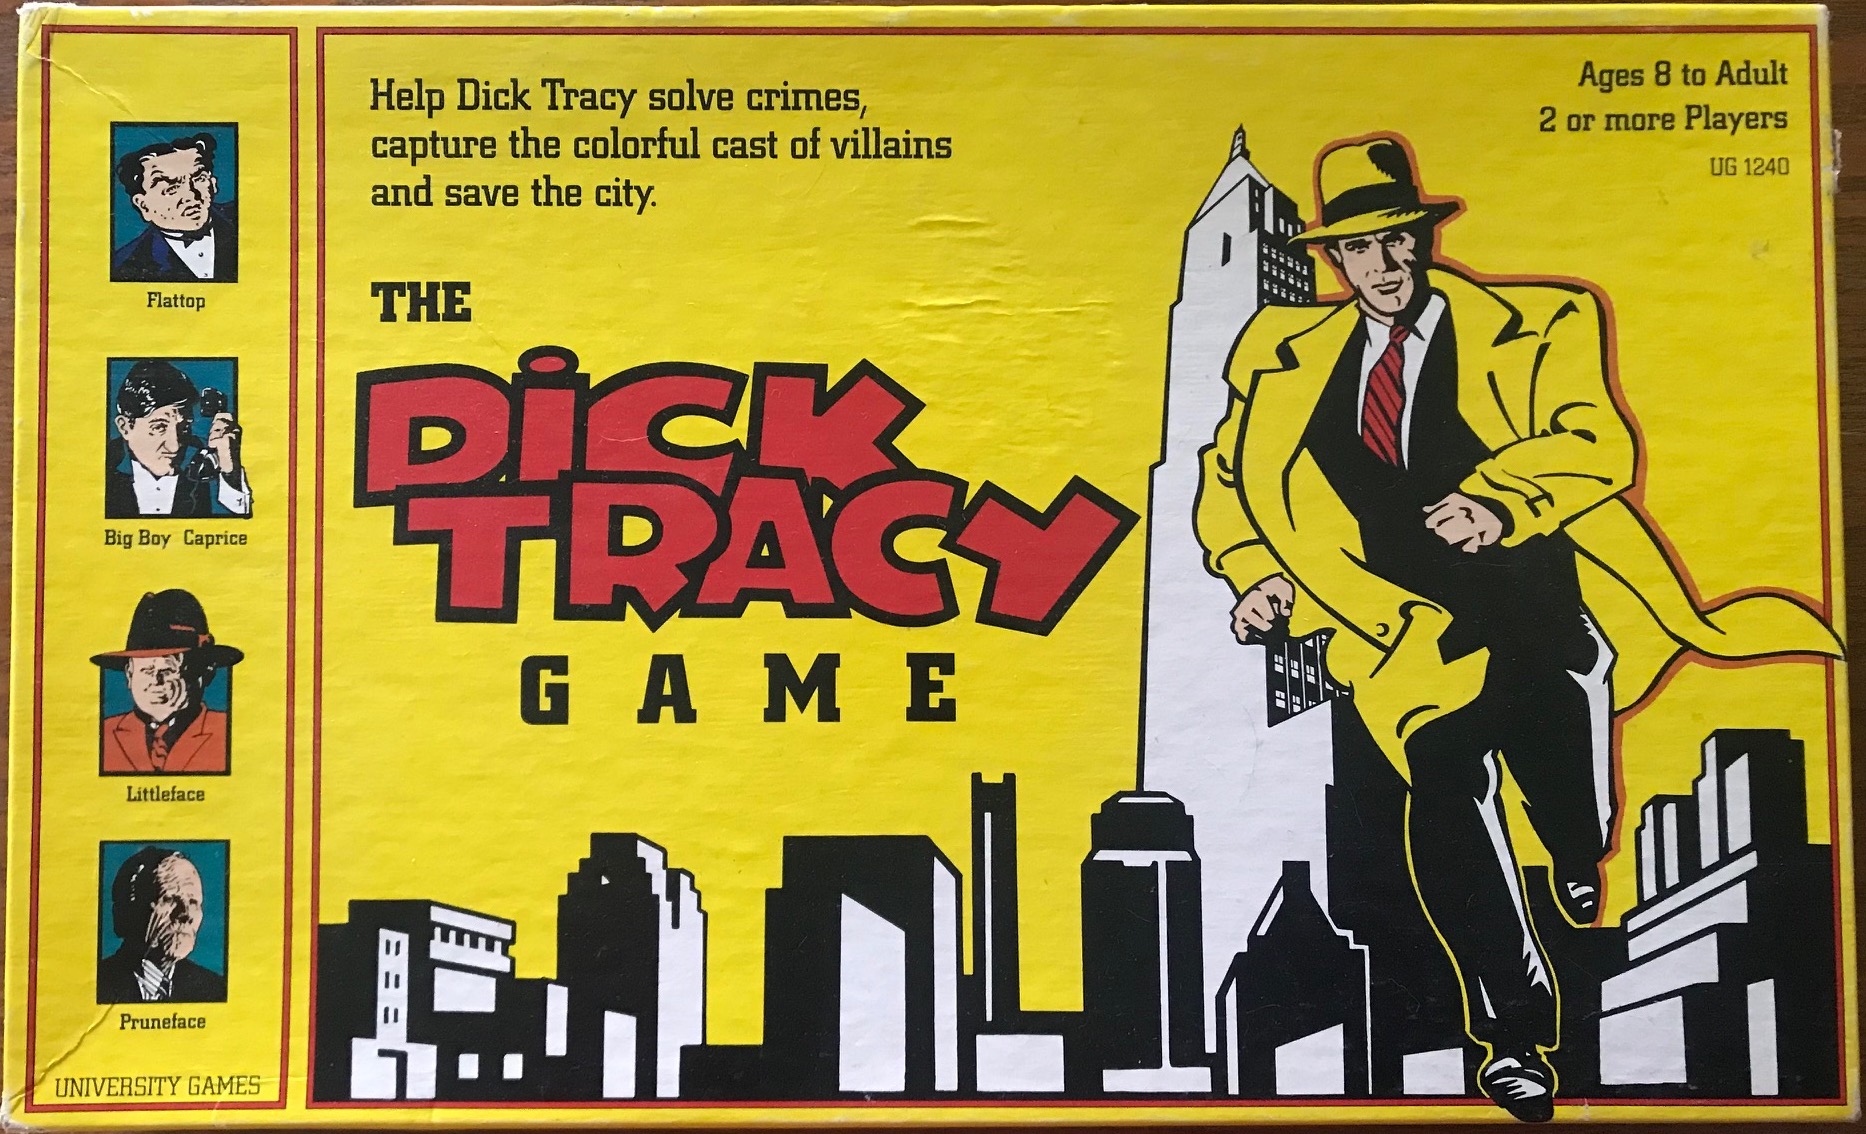 Dick tracy threesom